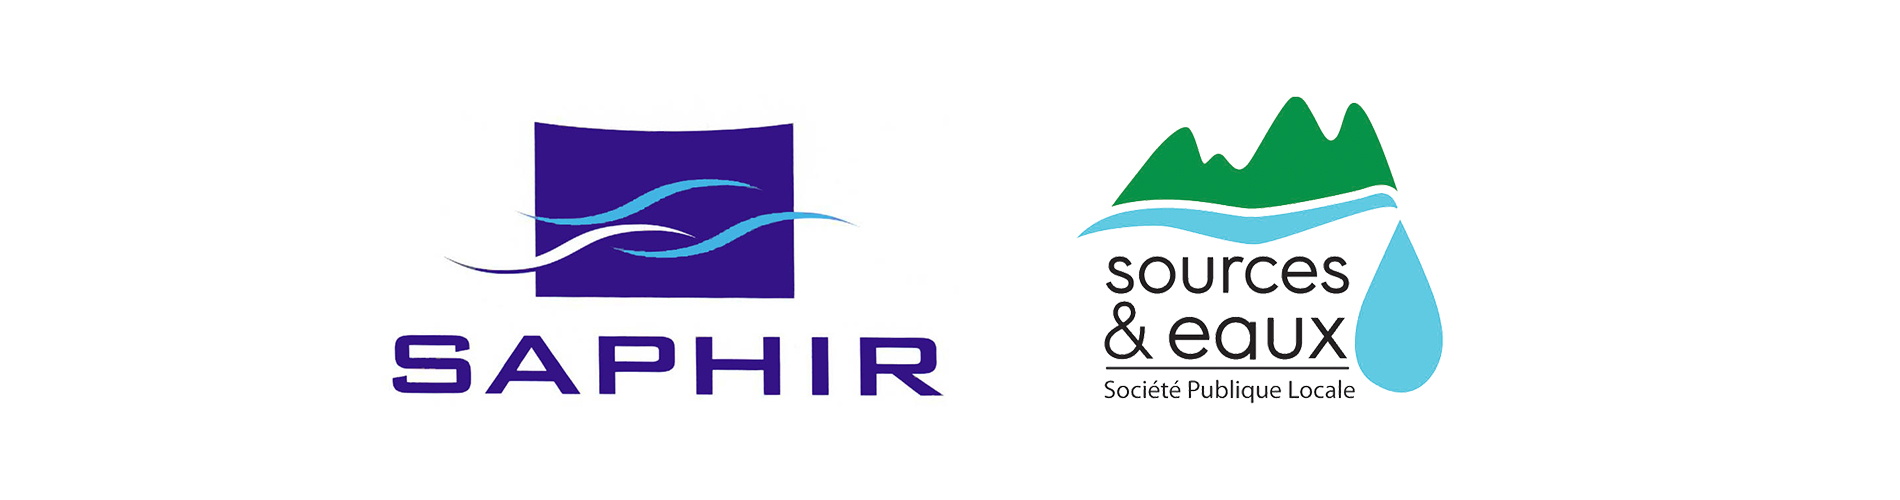 Logo SAPHIR et SPL Sources et eaux